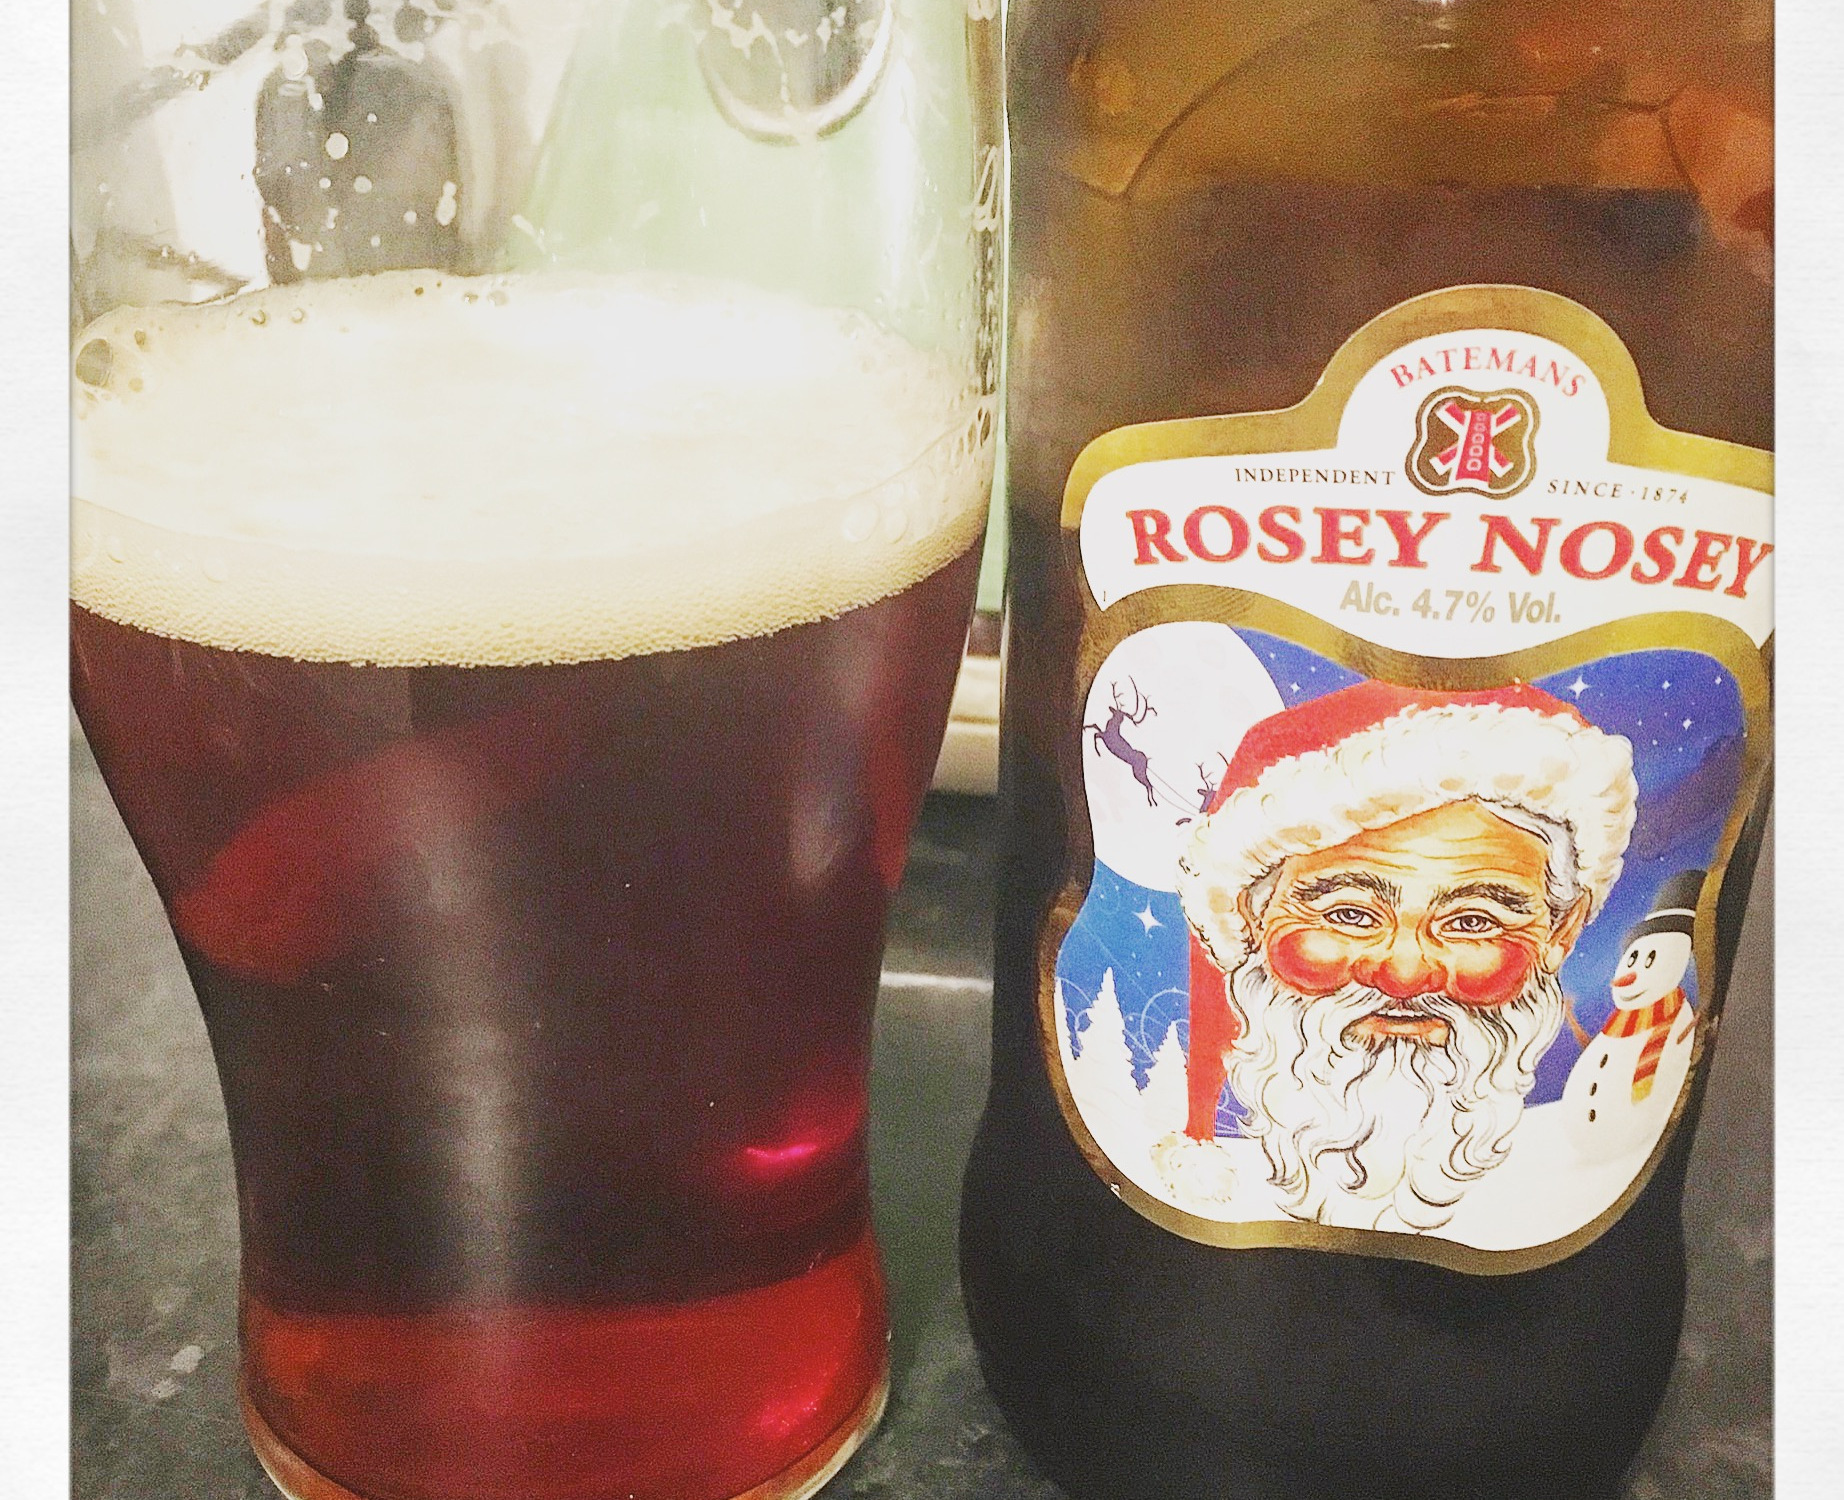 Bateman's Rosey Nosy Beer